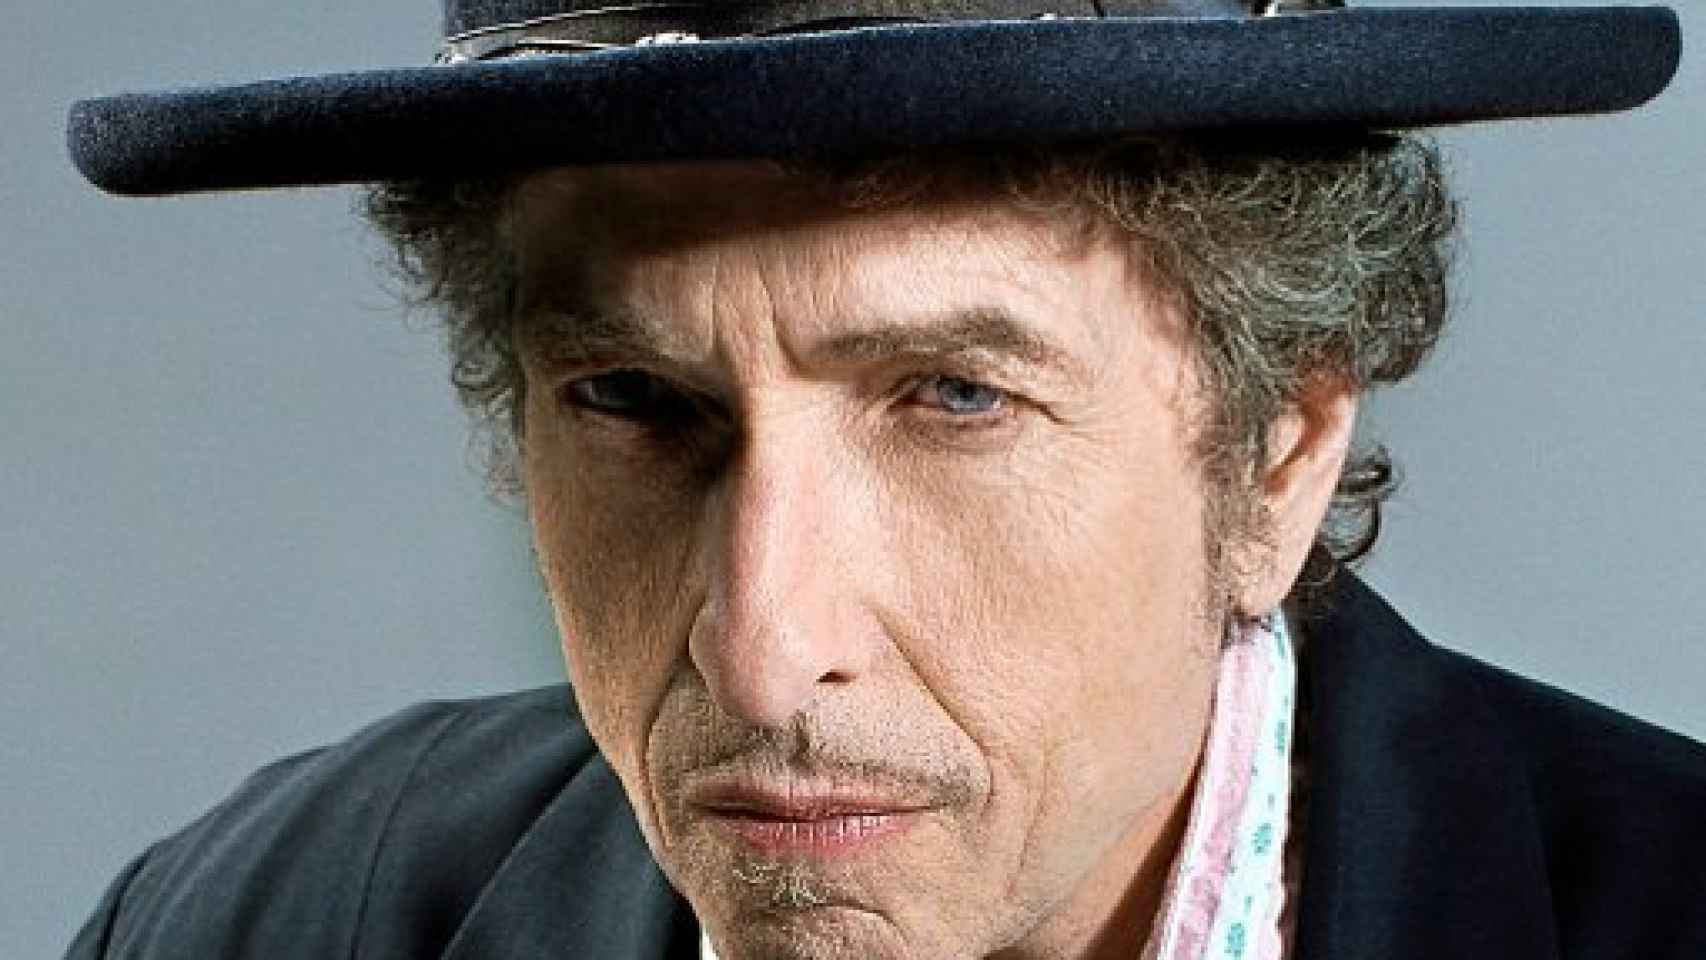 Image: Vamos, Bob. Arranca la nueva gira española de Dylan